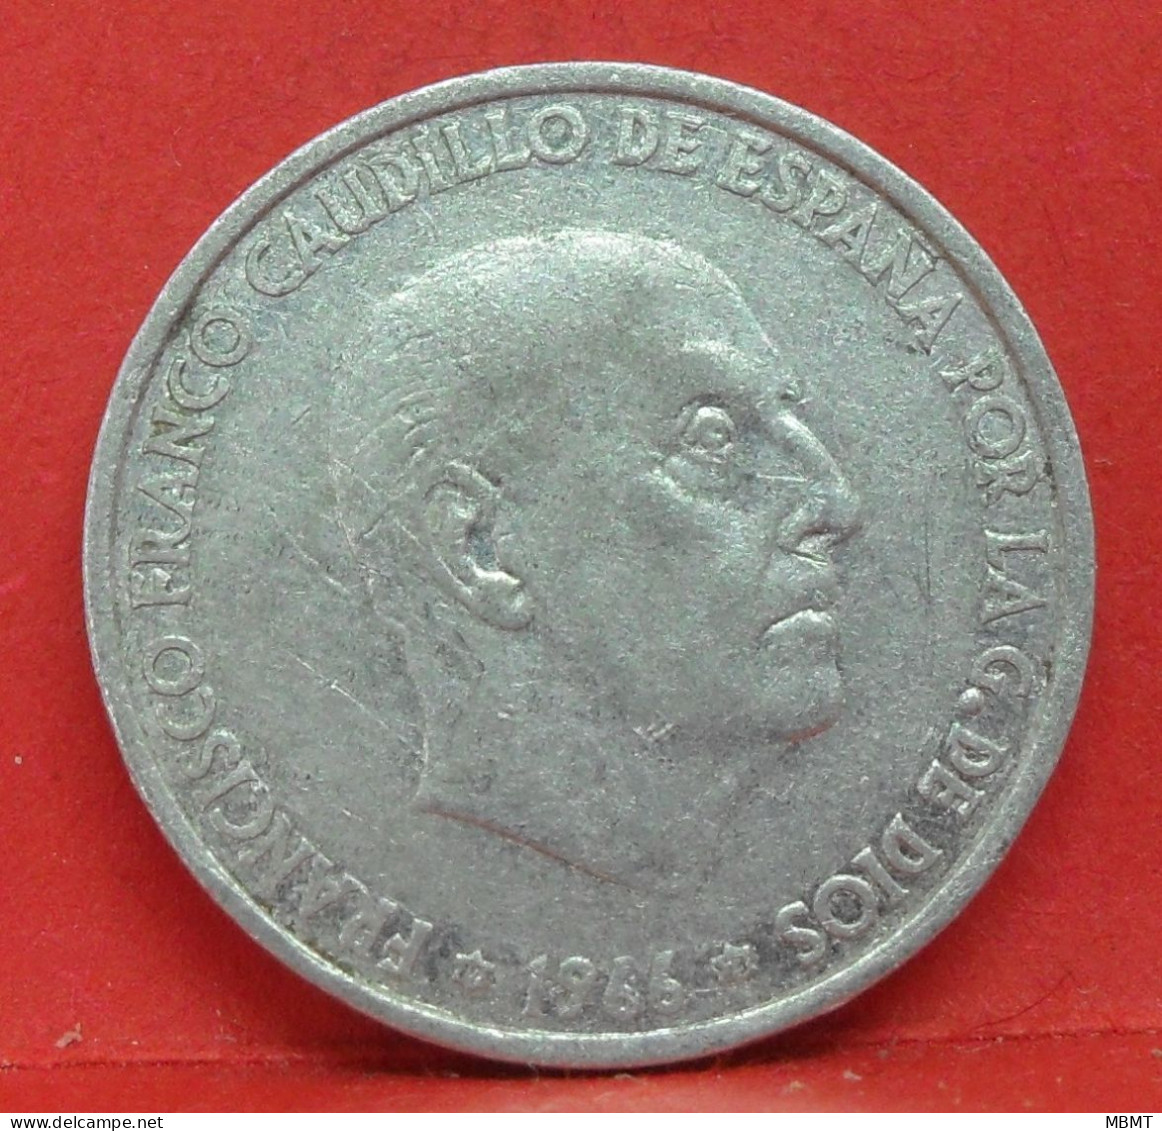 50 Centimos 1966 étoile 71 - TB - Pièce Monnaie Espagne - Article N°2227 - 50 Centesimi